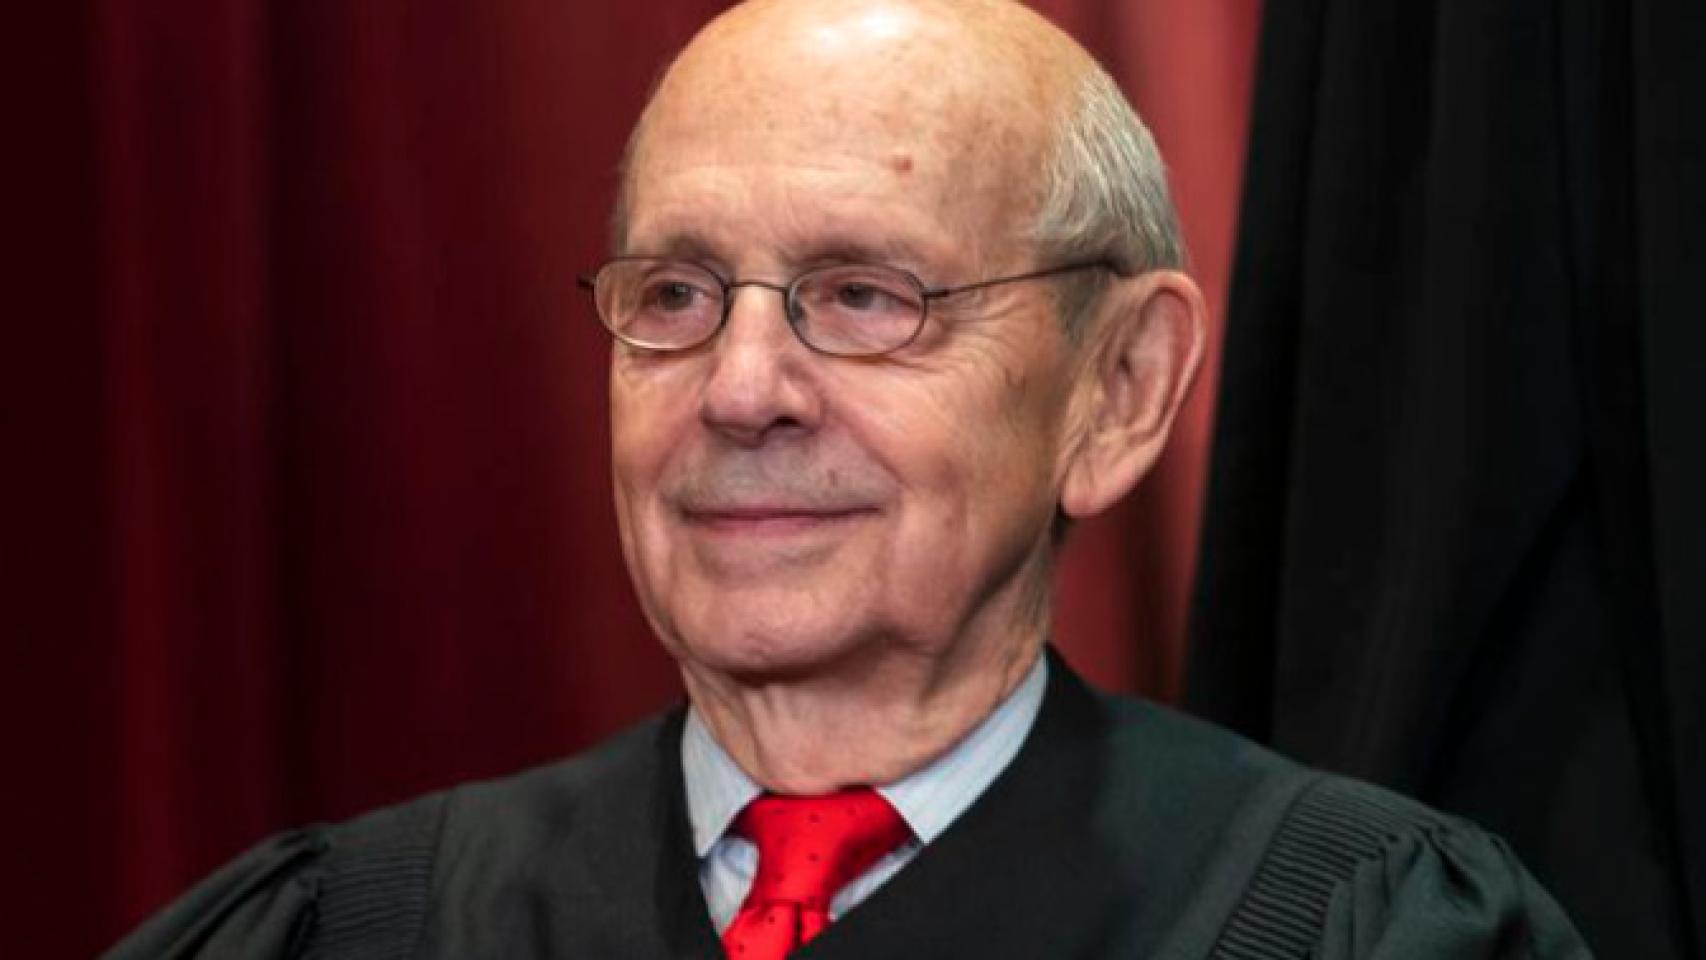 El juez progresista Stephen Breyer en una imagen de archivo.